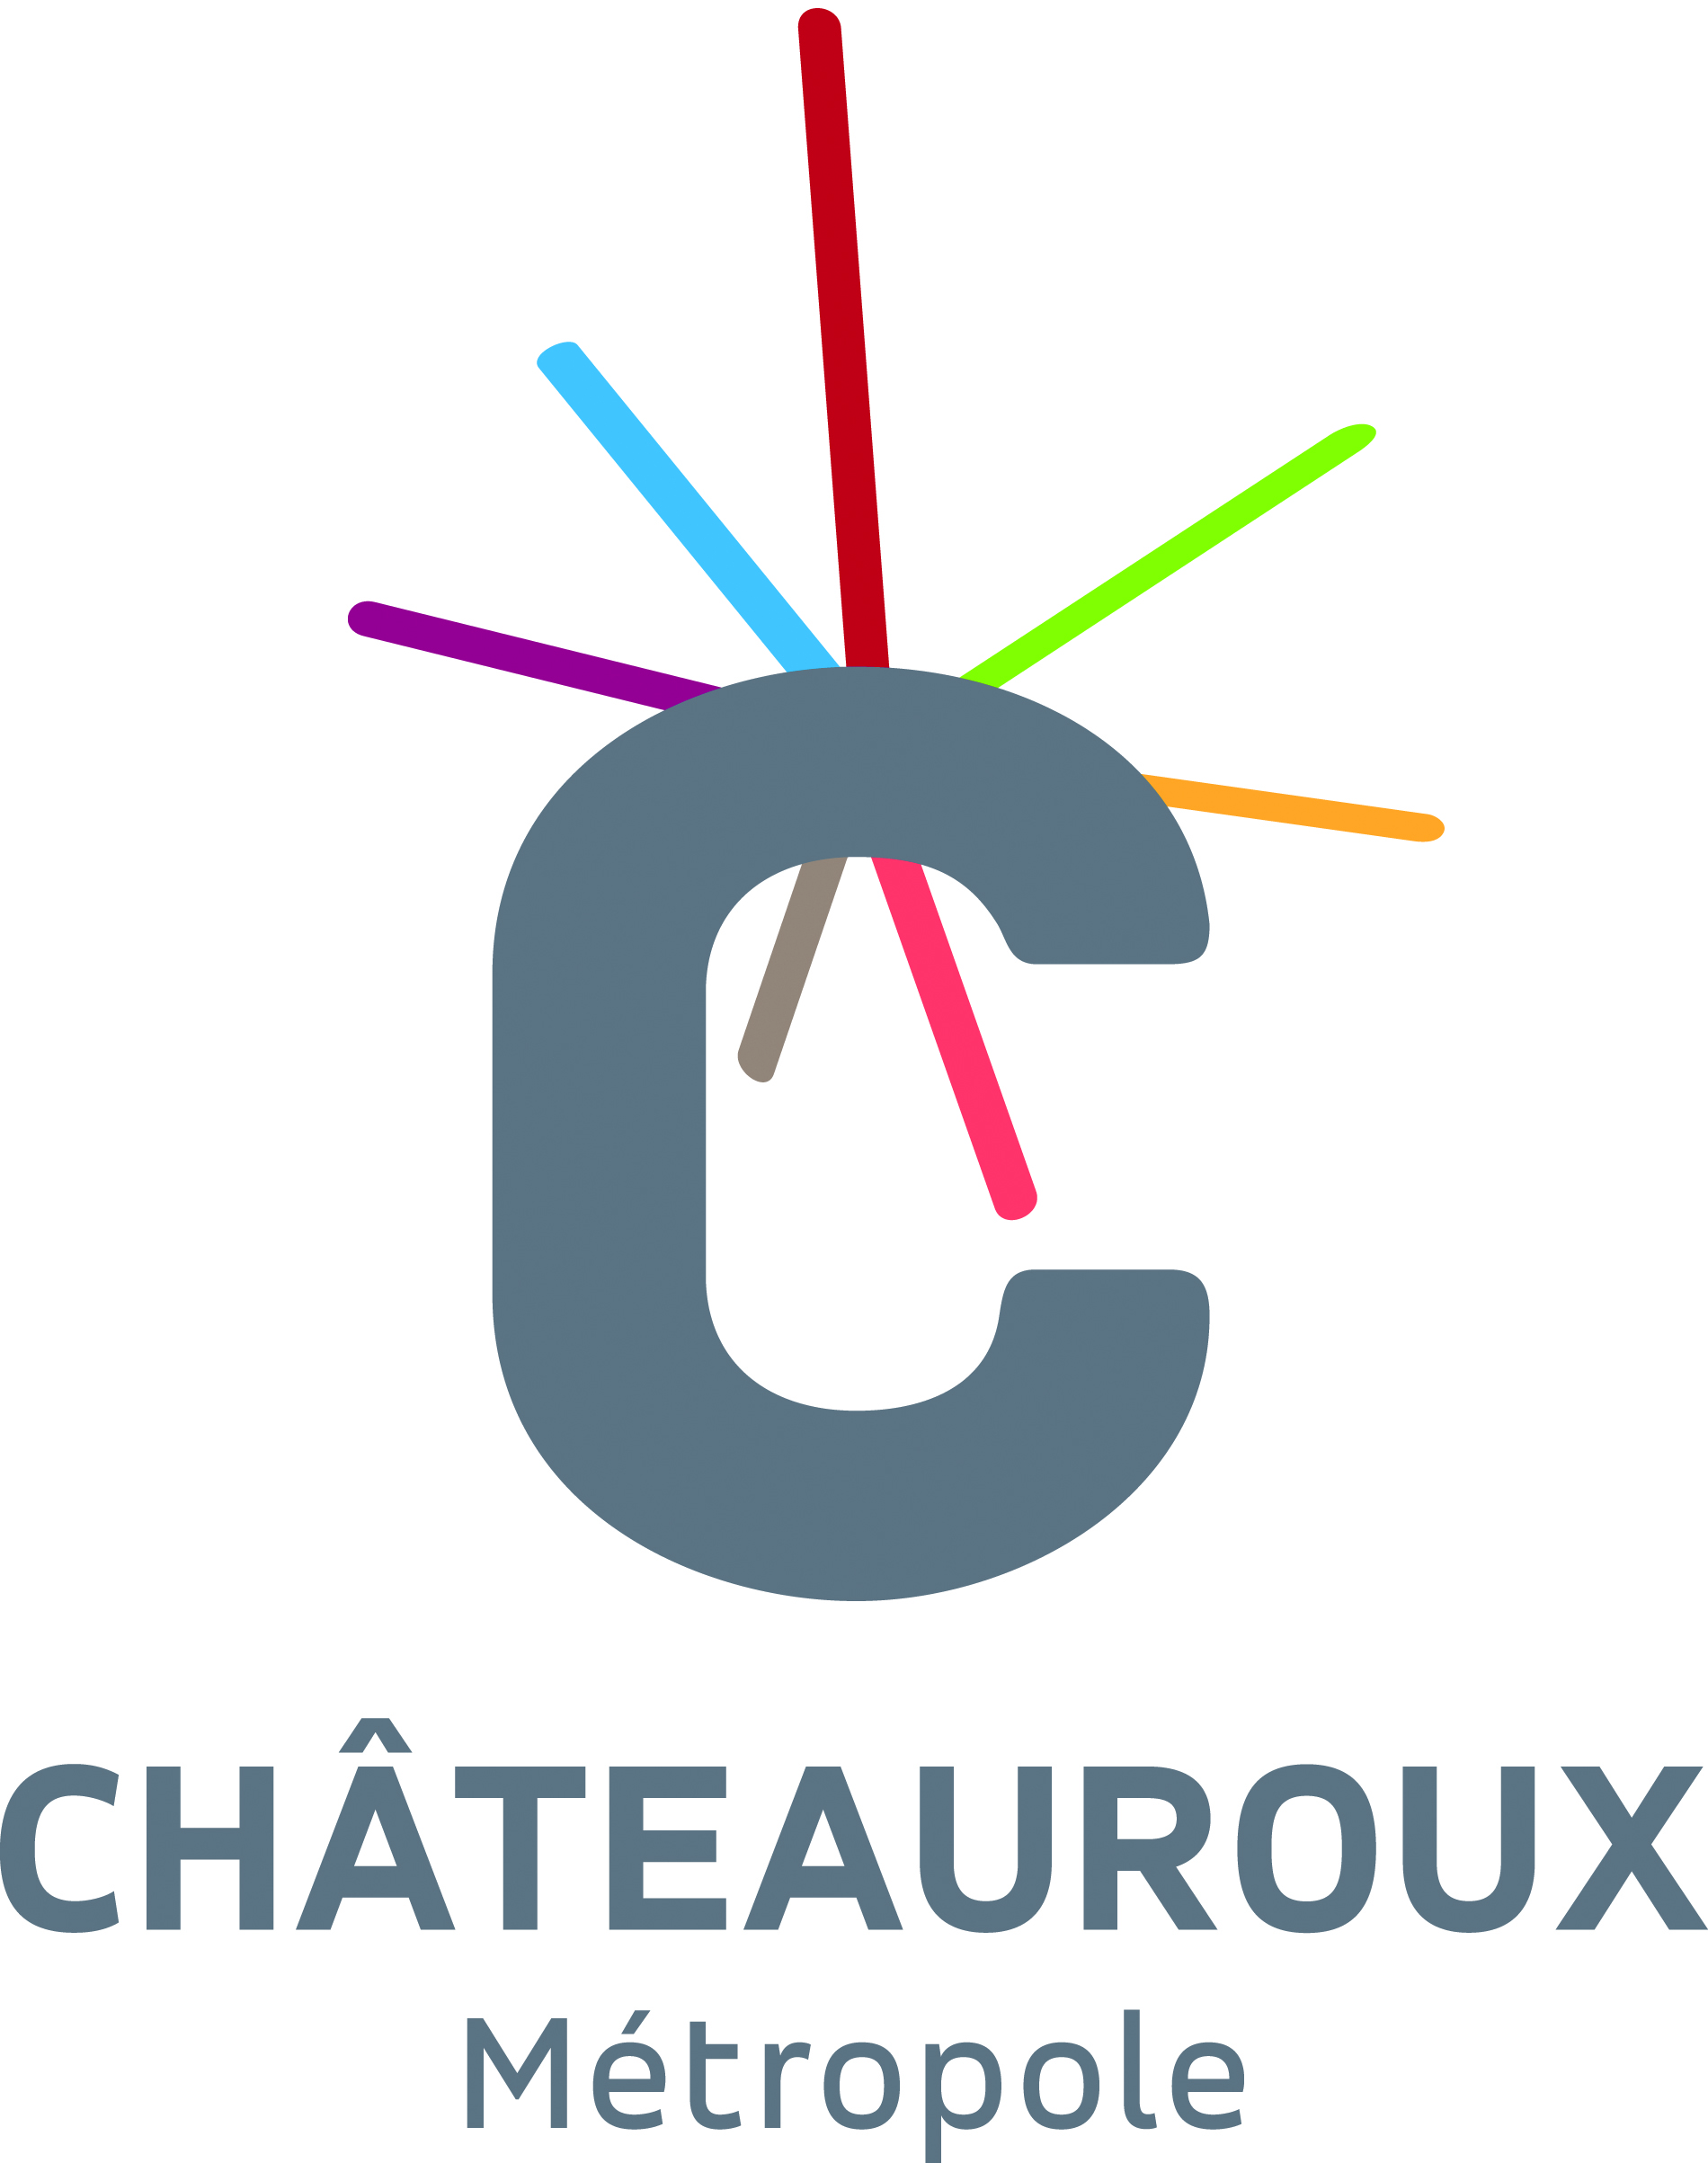 Châteauroux Metropole